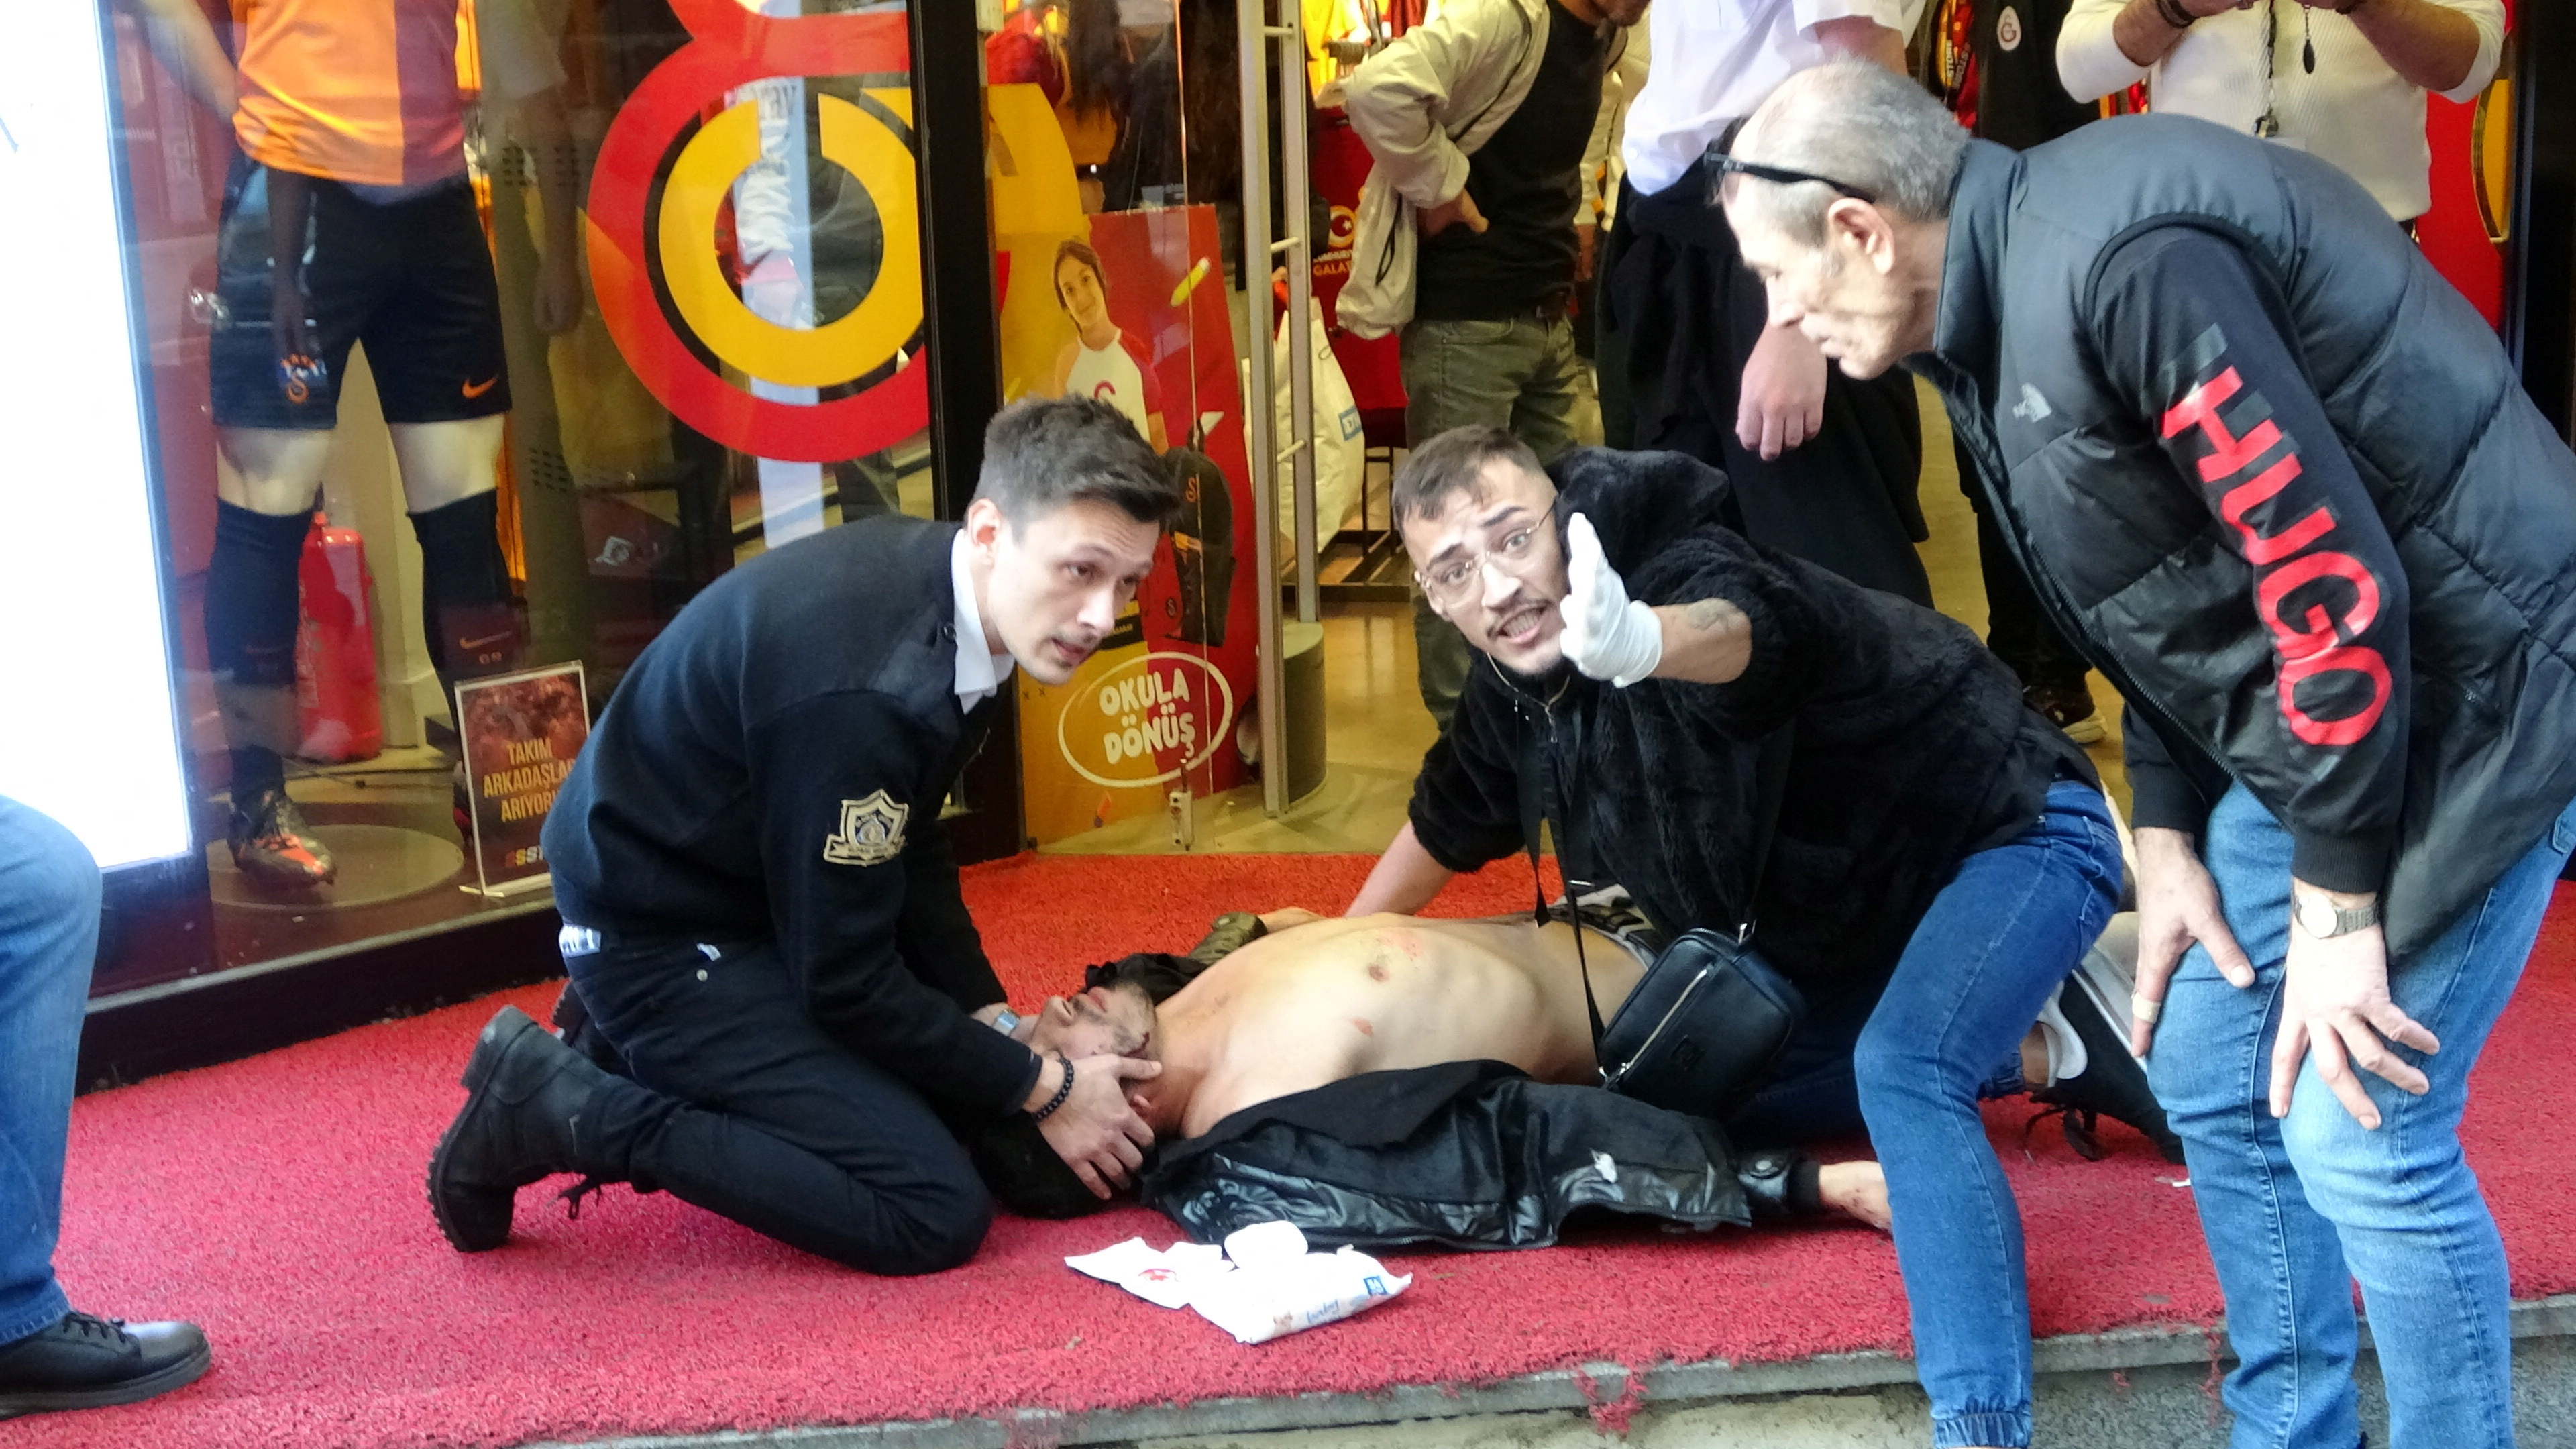 El atentado en Estambul, en imágenes | Fotos | Internacional | EL PAÍS